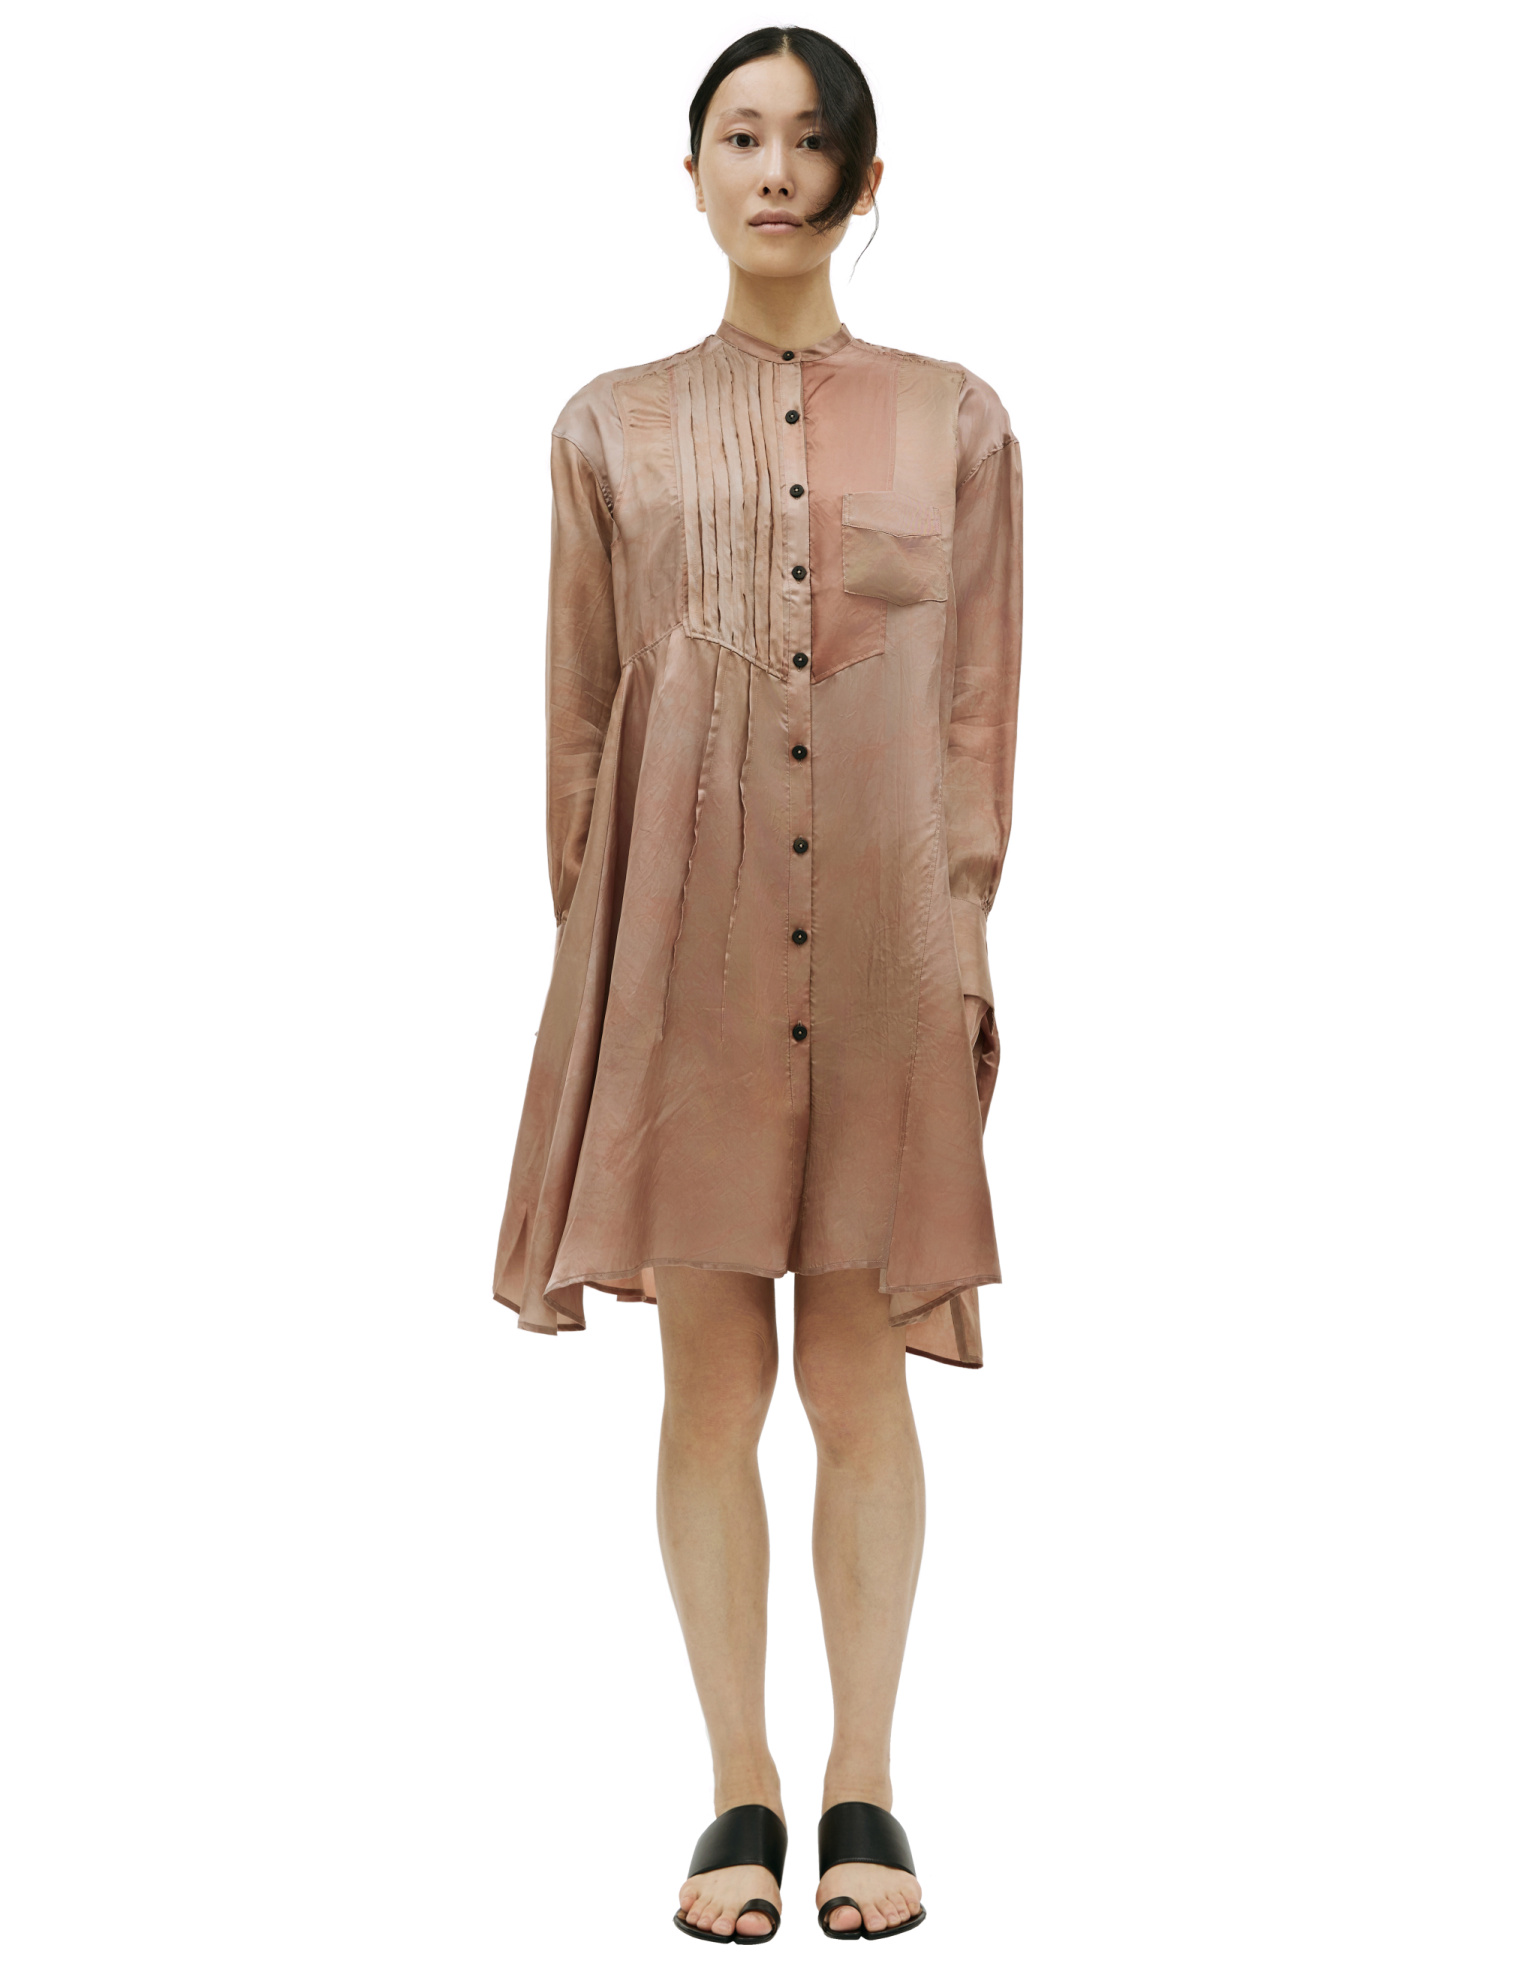 Ziggy Chen Платье-0W2310605 рубашка, ассиметричная, защипы на груди, розовый